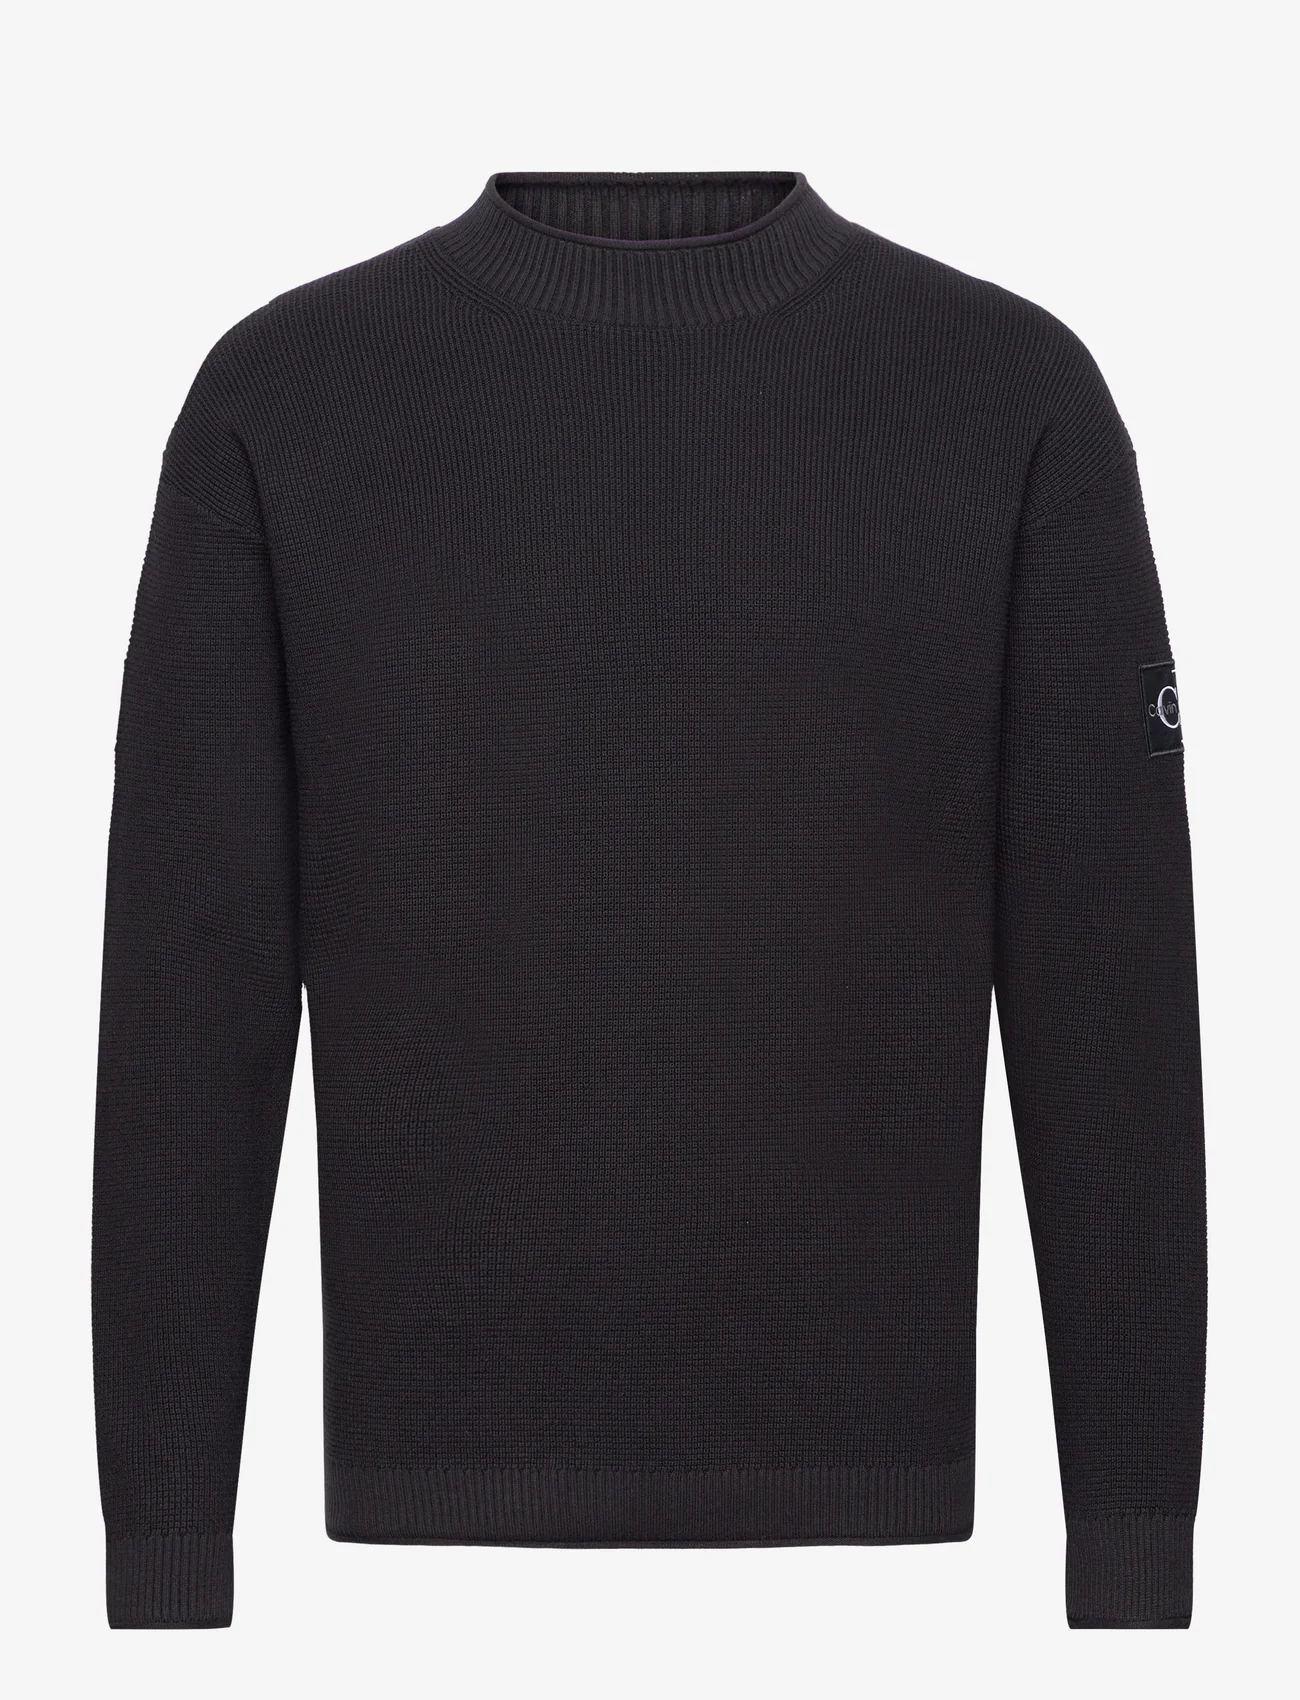 Calvin Klein Jeans - BADGE RELAXED SWEATER - pyöreäaukkoiset - ck black - 0